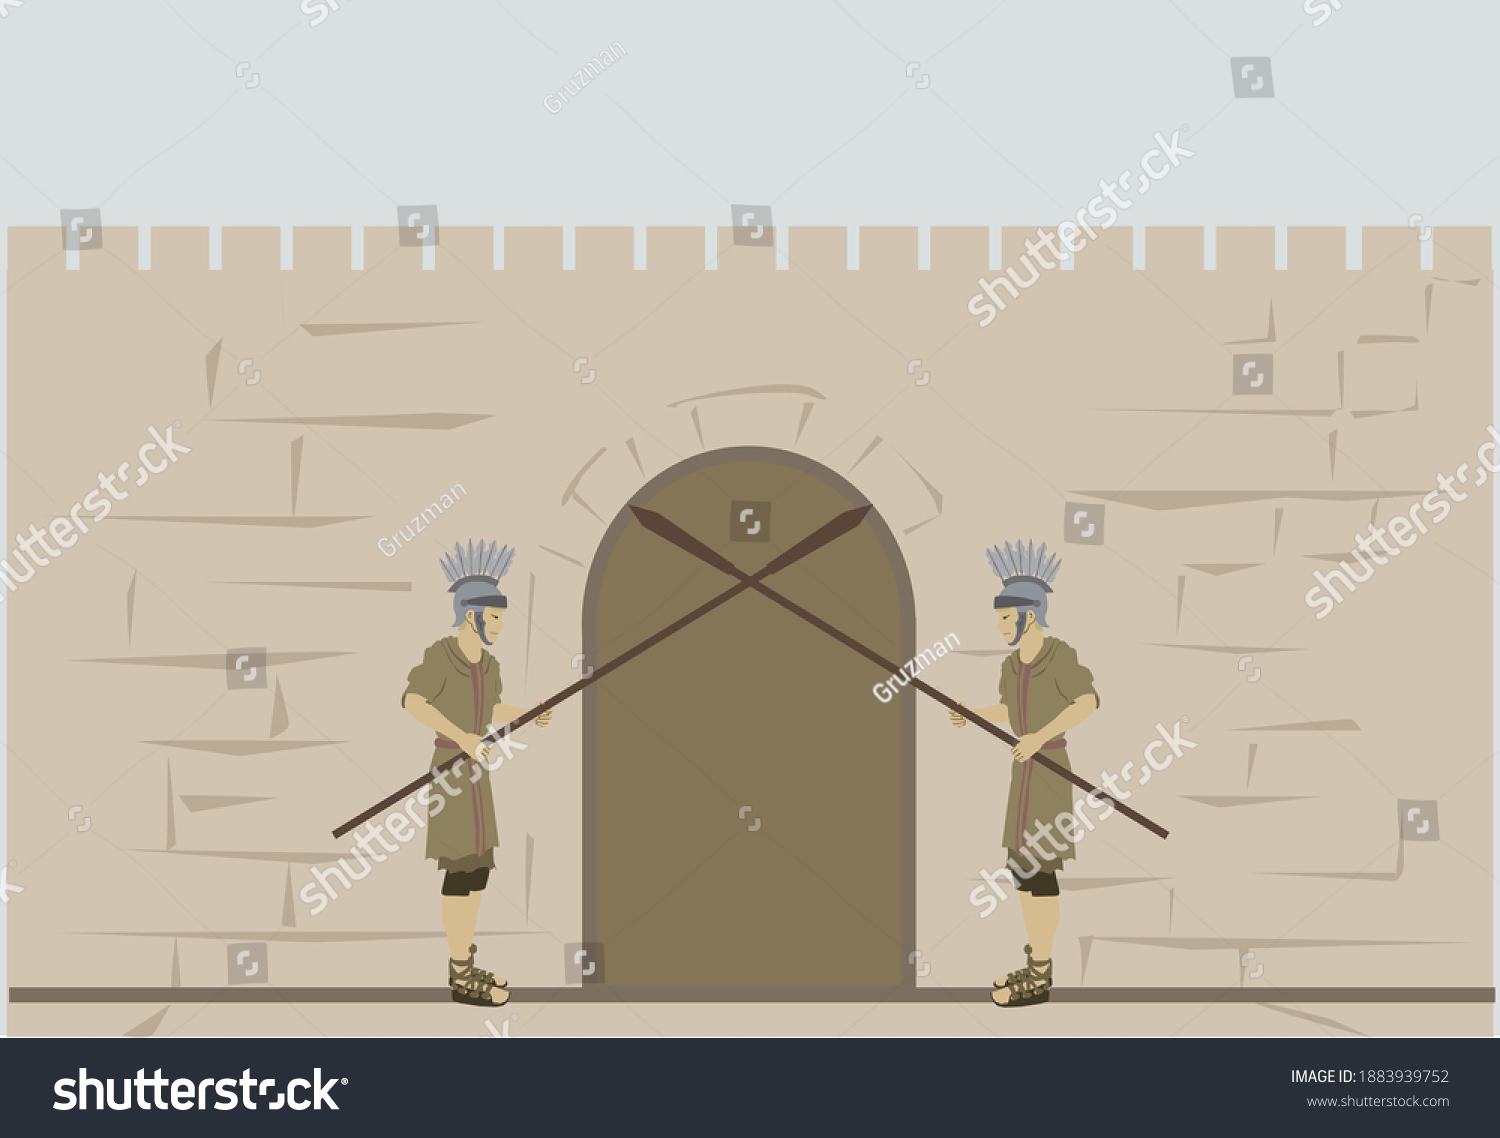 ציור המצור על ירושלים חיילים רומאיים רומים שומרים על שערי חומת ירושלים ציור וקטורי קליפ ארט-18...jpg